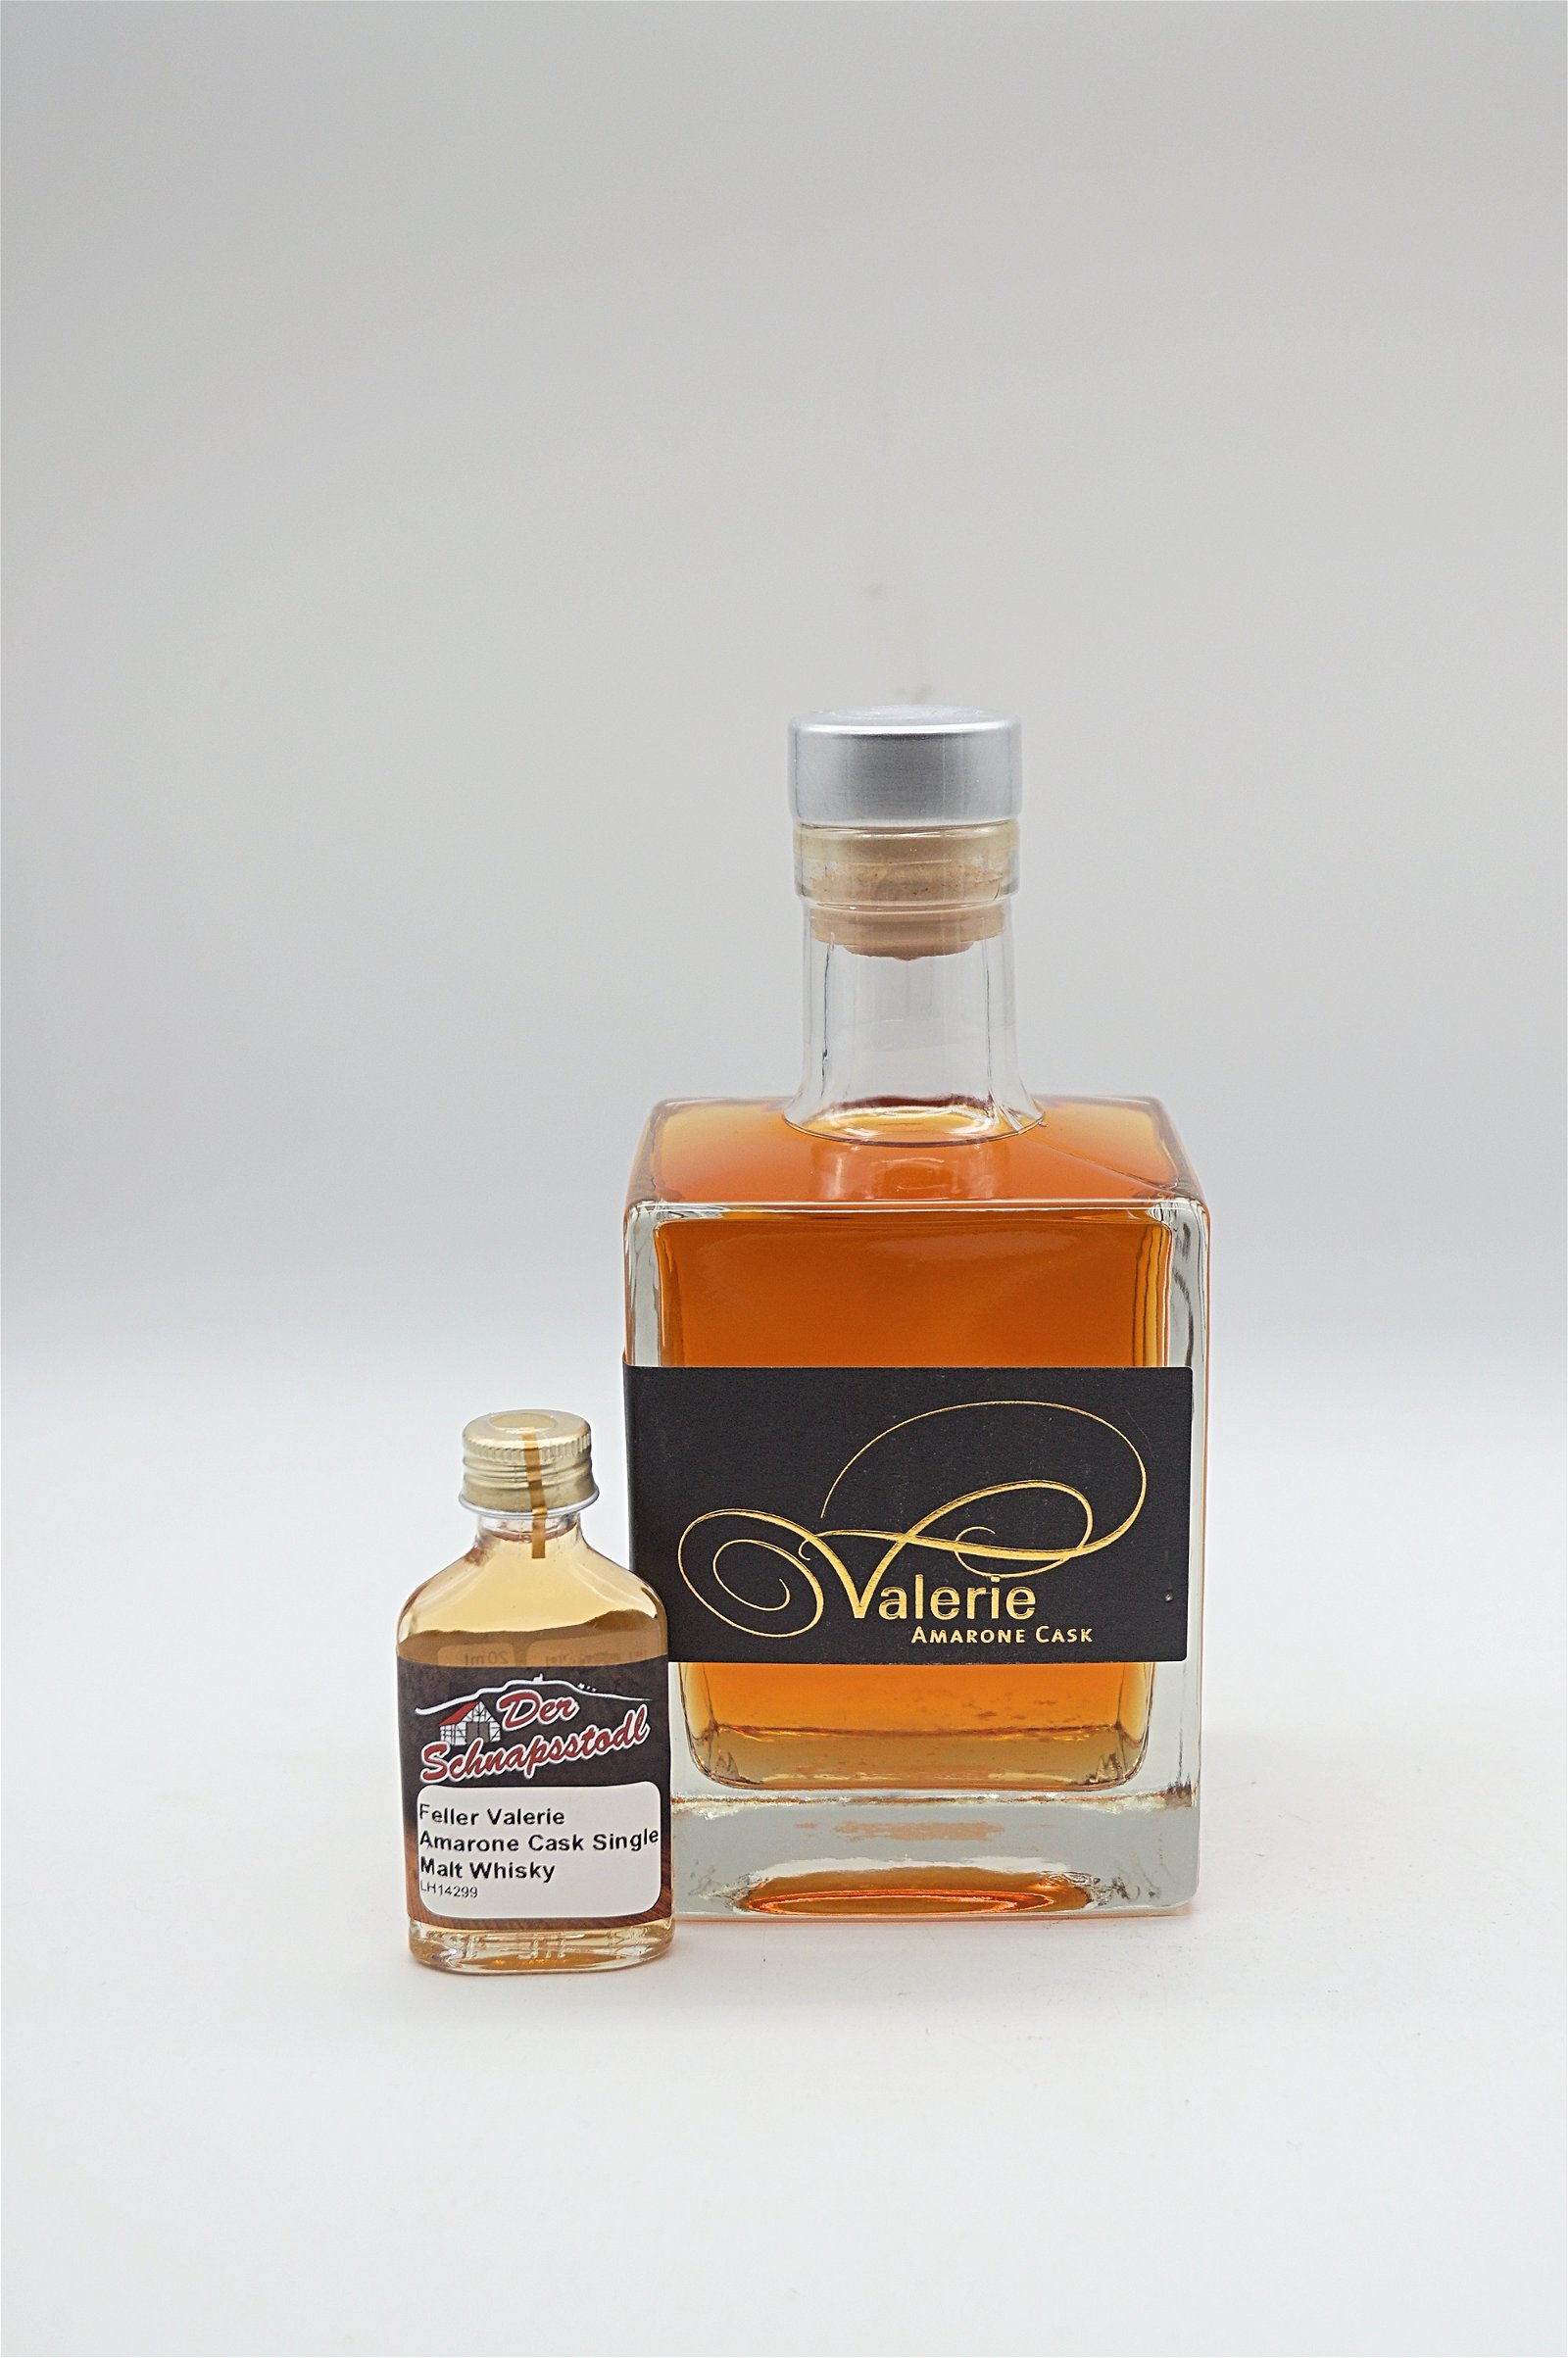 Feller Valerie Single Malt Whisky Amarone Cask Sample 20 ml